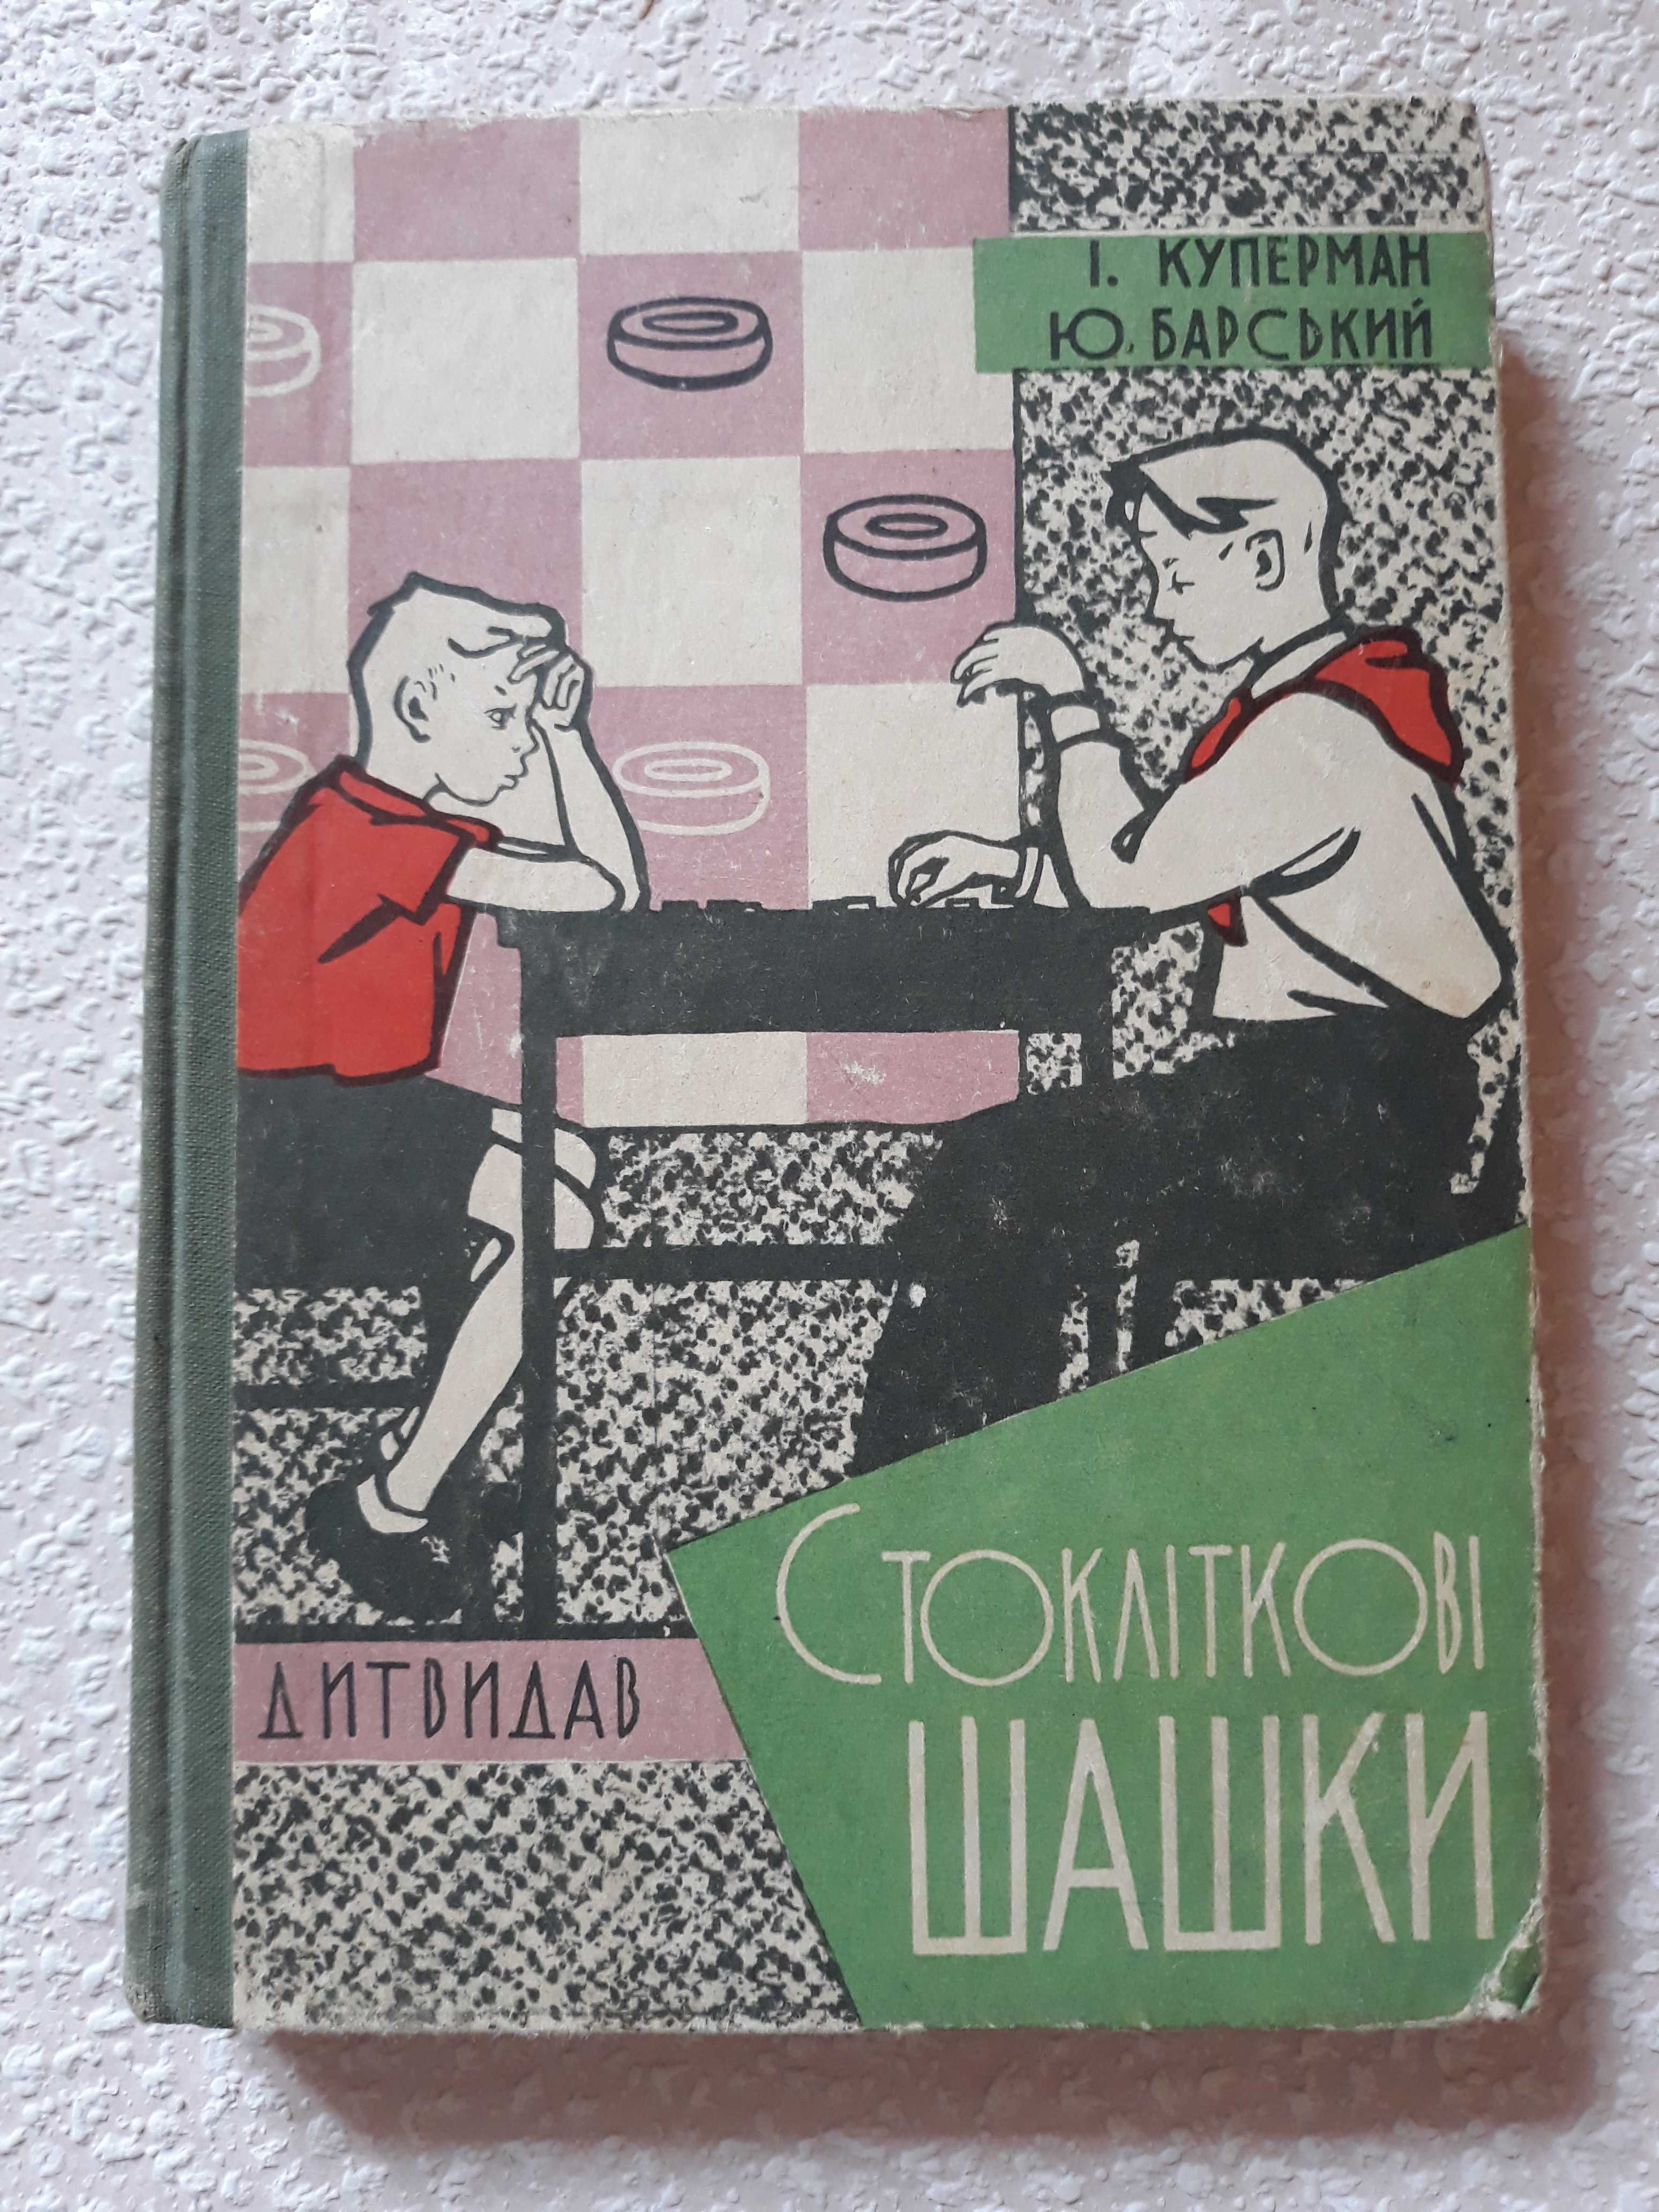 Куперман Стоклiтковi шашки, 1961